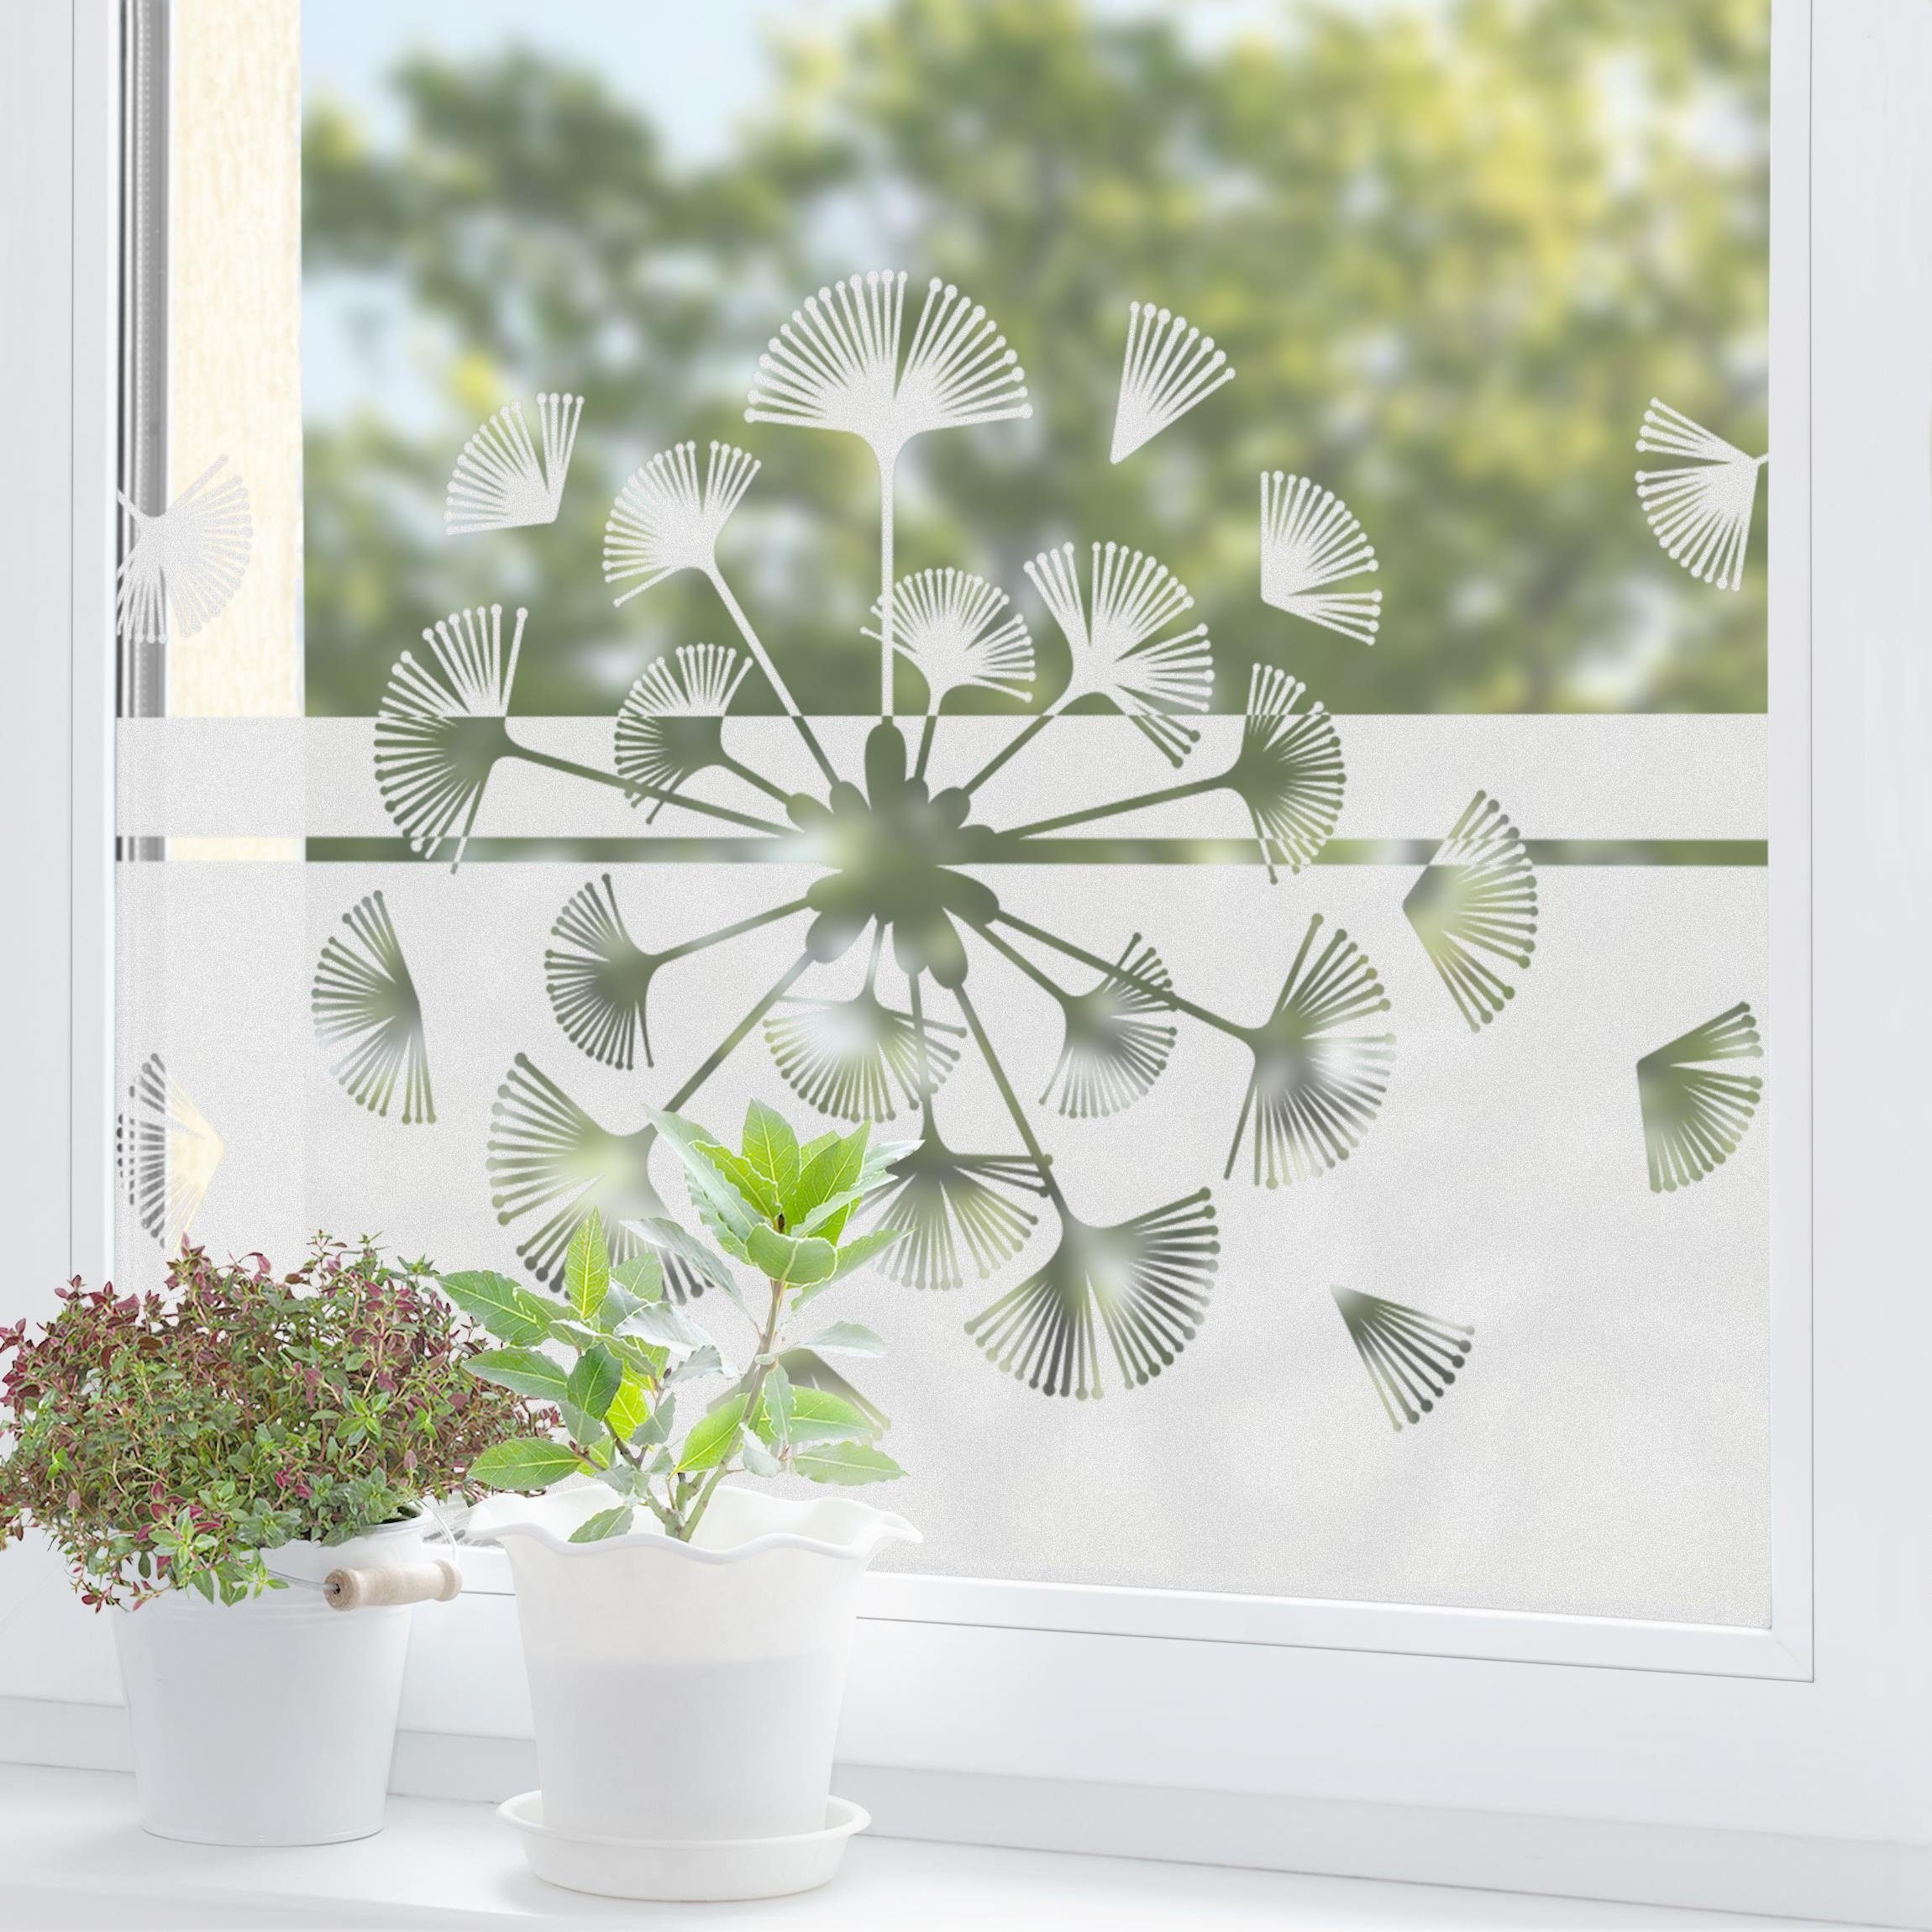 Fensterfolie statisch haftend Motiv Fensterdeko Moderne Pusteblume